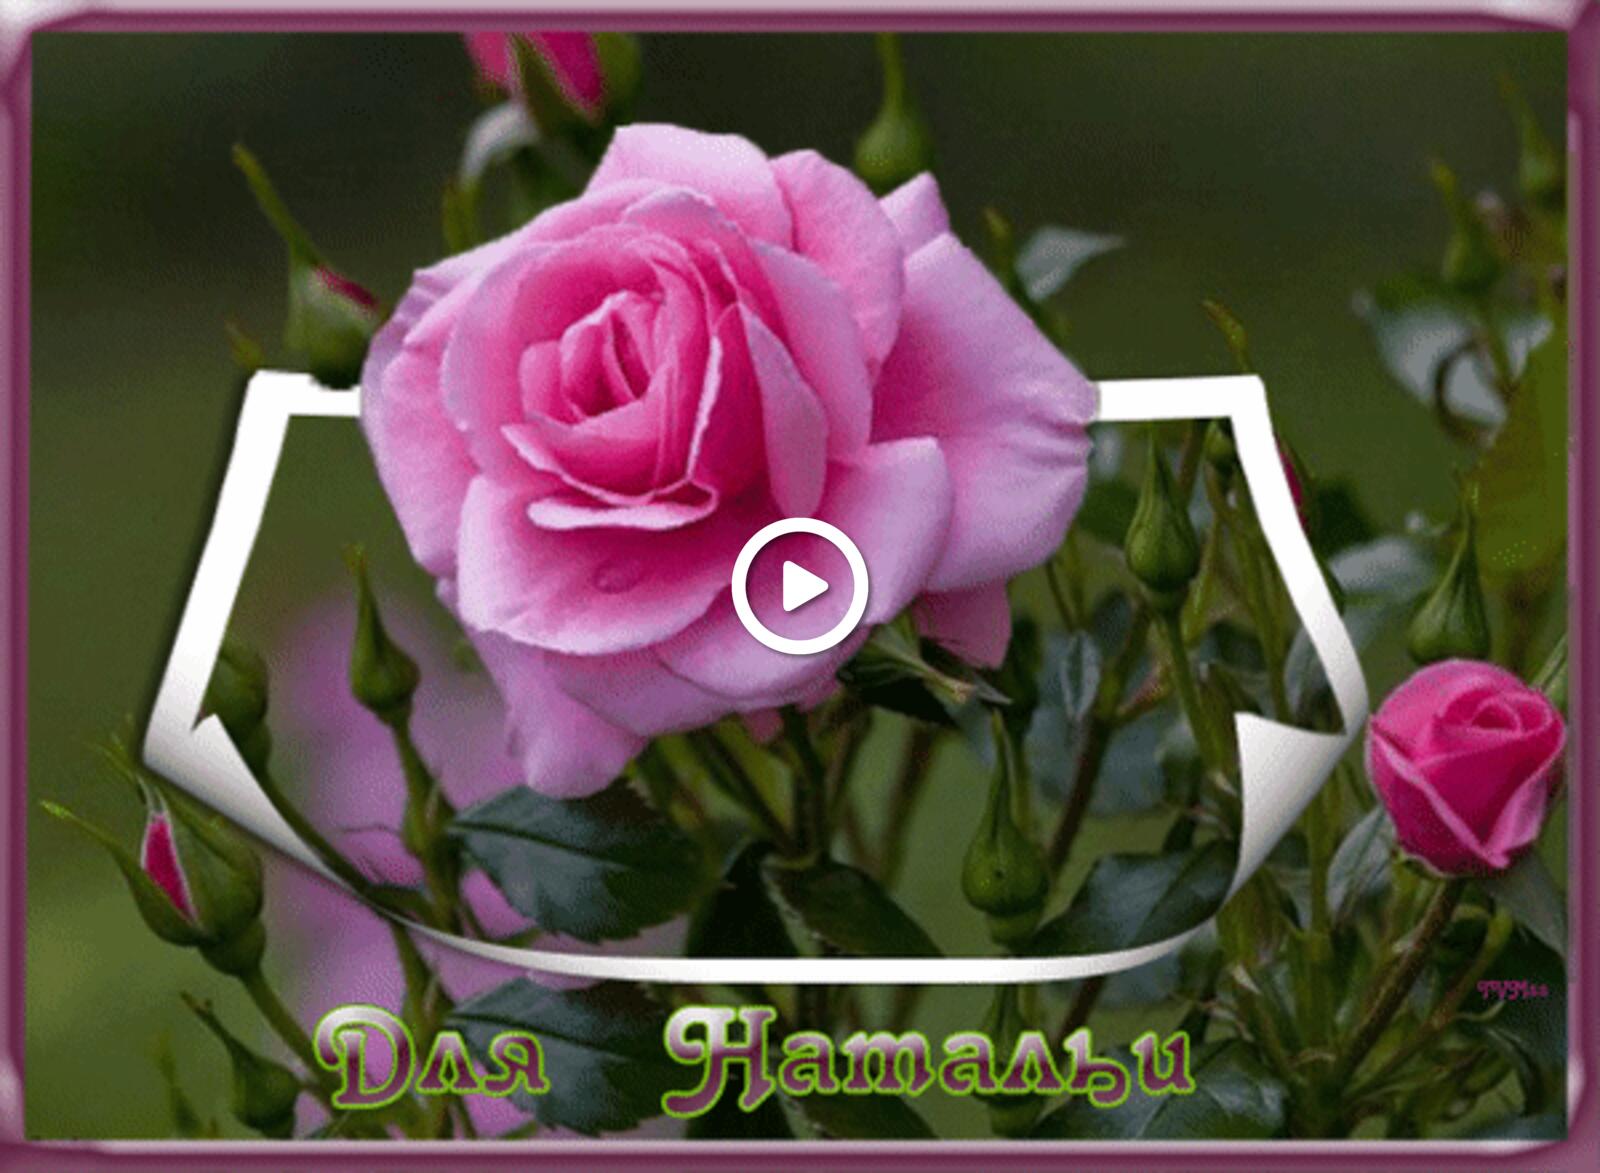 一张以娜塔莉亚的玫瑰花 粉红玫瑰 natalya为主题的明信片